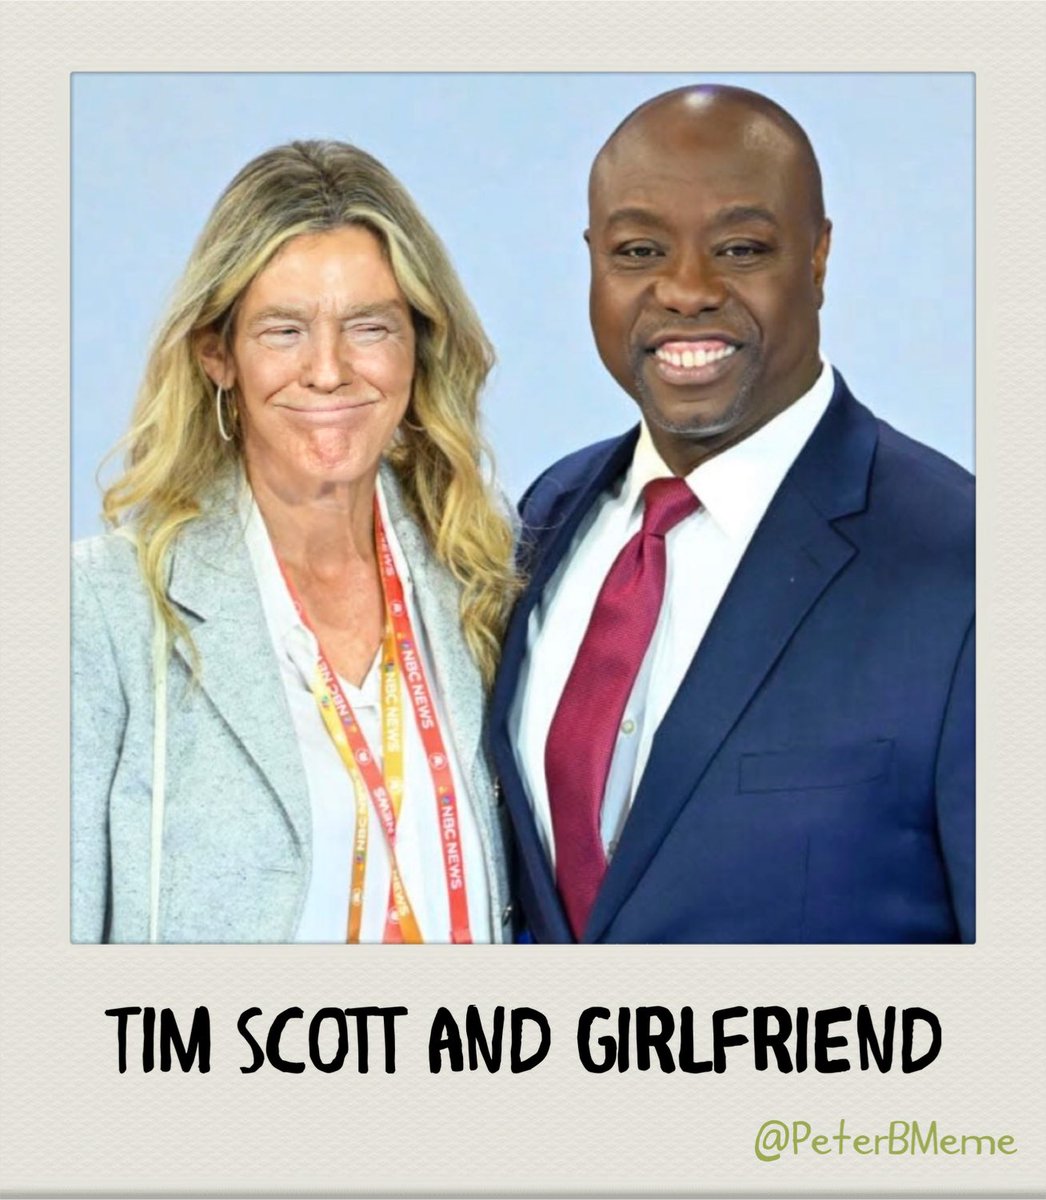 #TimScott @SenatorTimScott